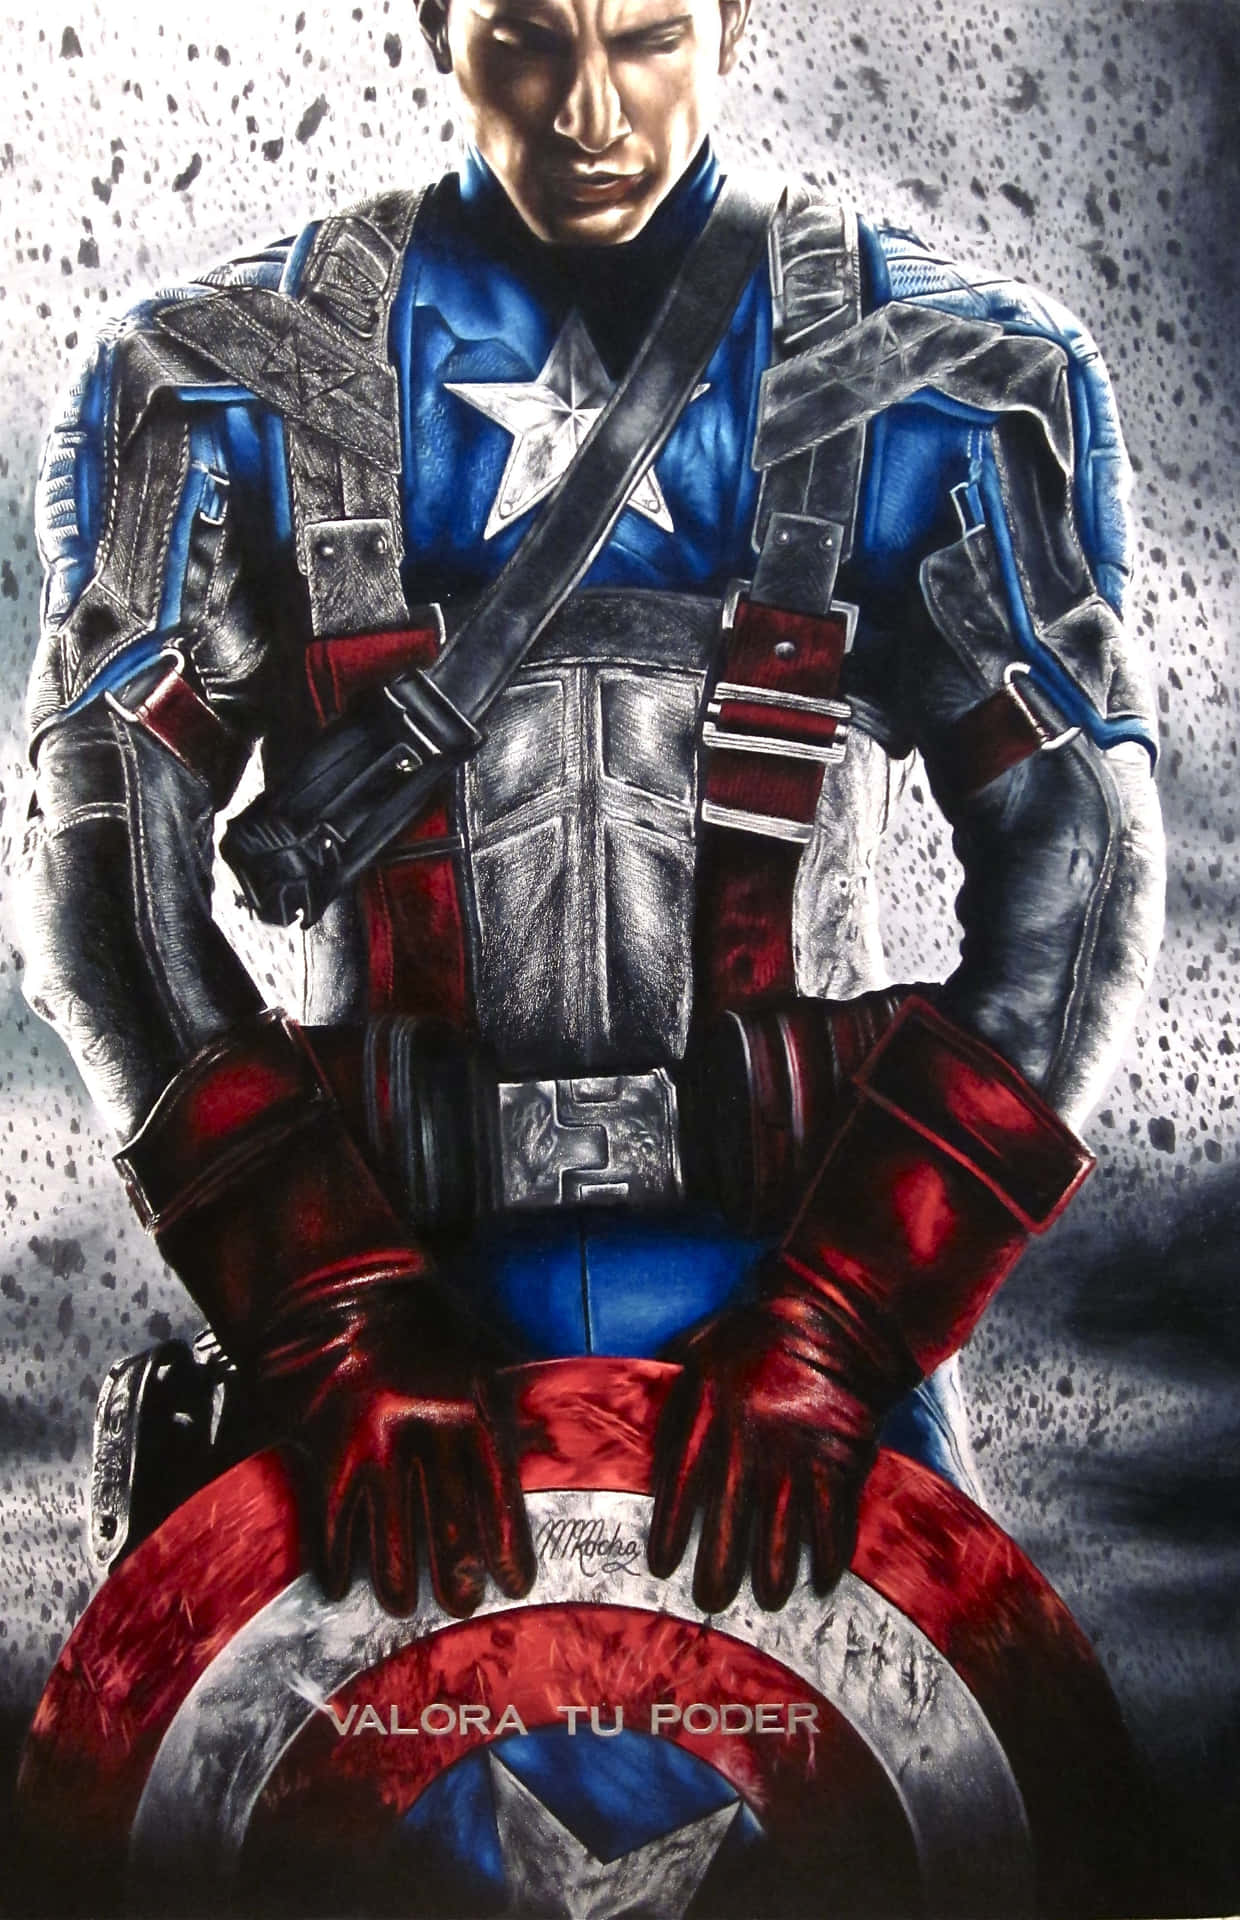 Mostrail Tuo Supporto A Captain America Con Questa Opera D'arte Che Cattura L'attenzione.